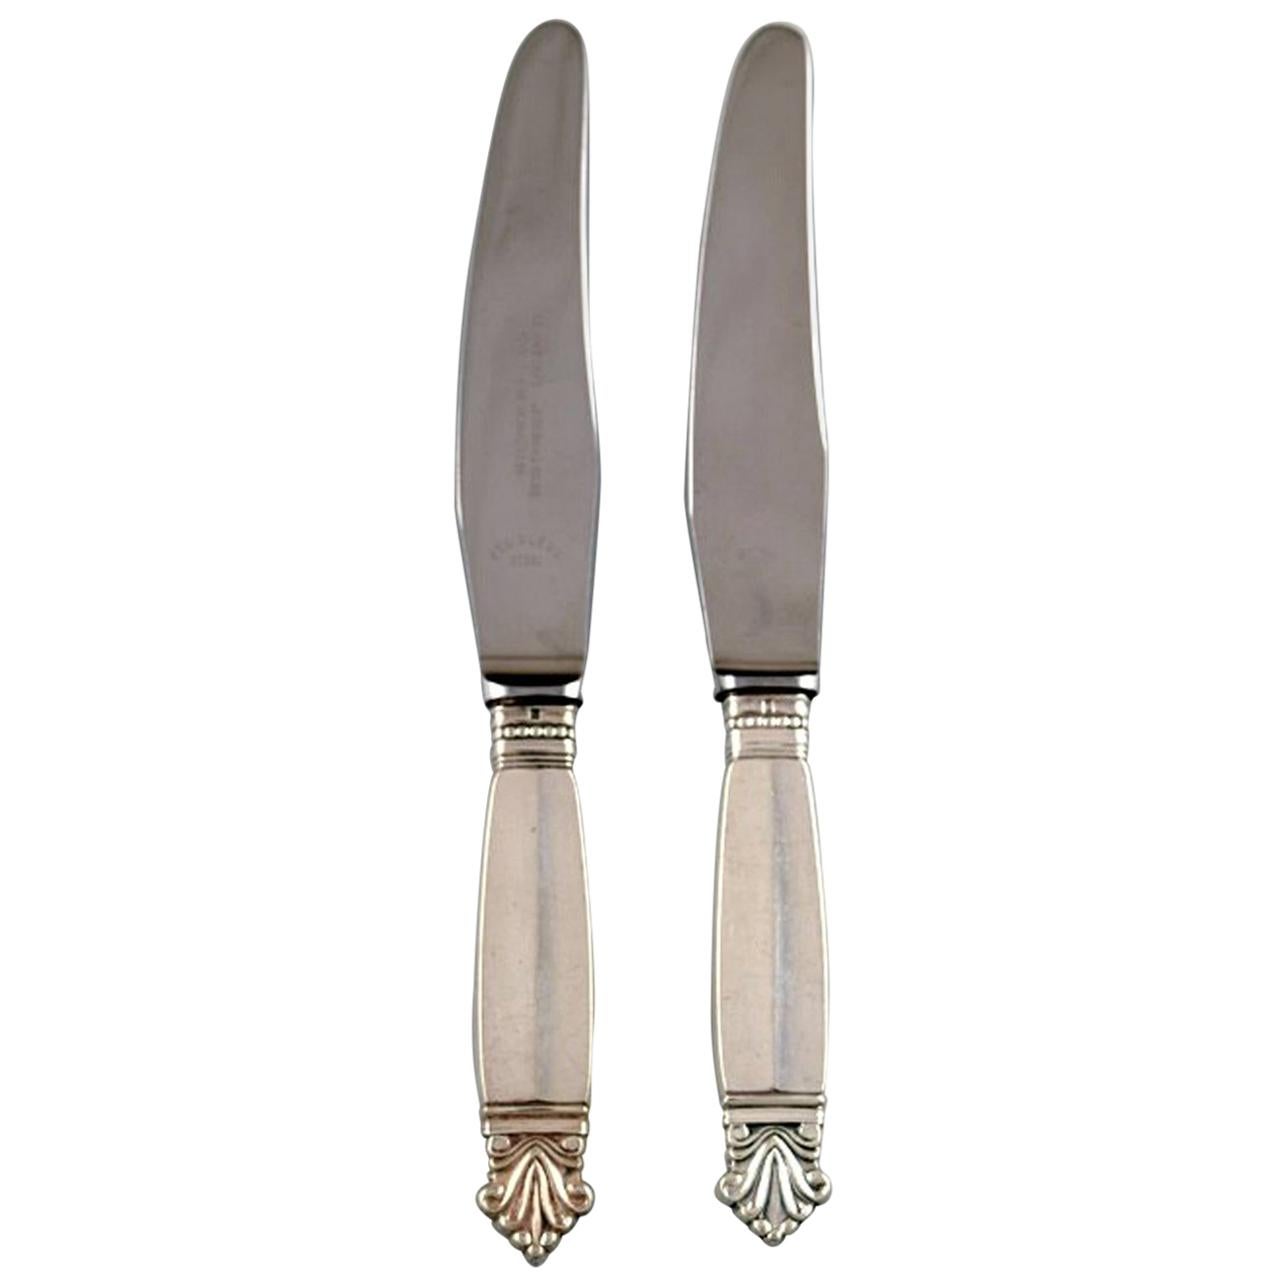 Zwei Georg Jensen Acanthus-Messer aus Sterlingsilber, zwei Lunch-Messer mit kurzen Griffen